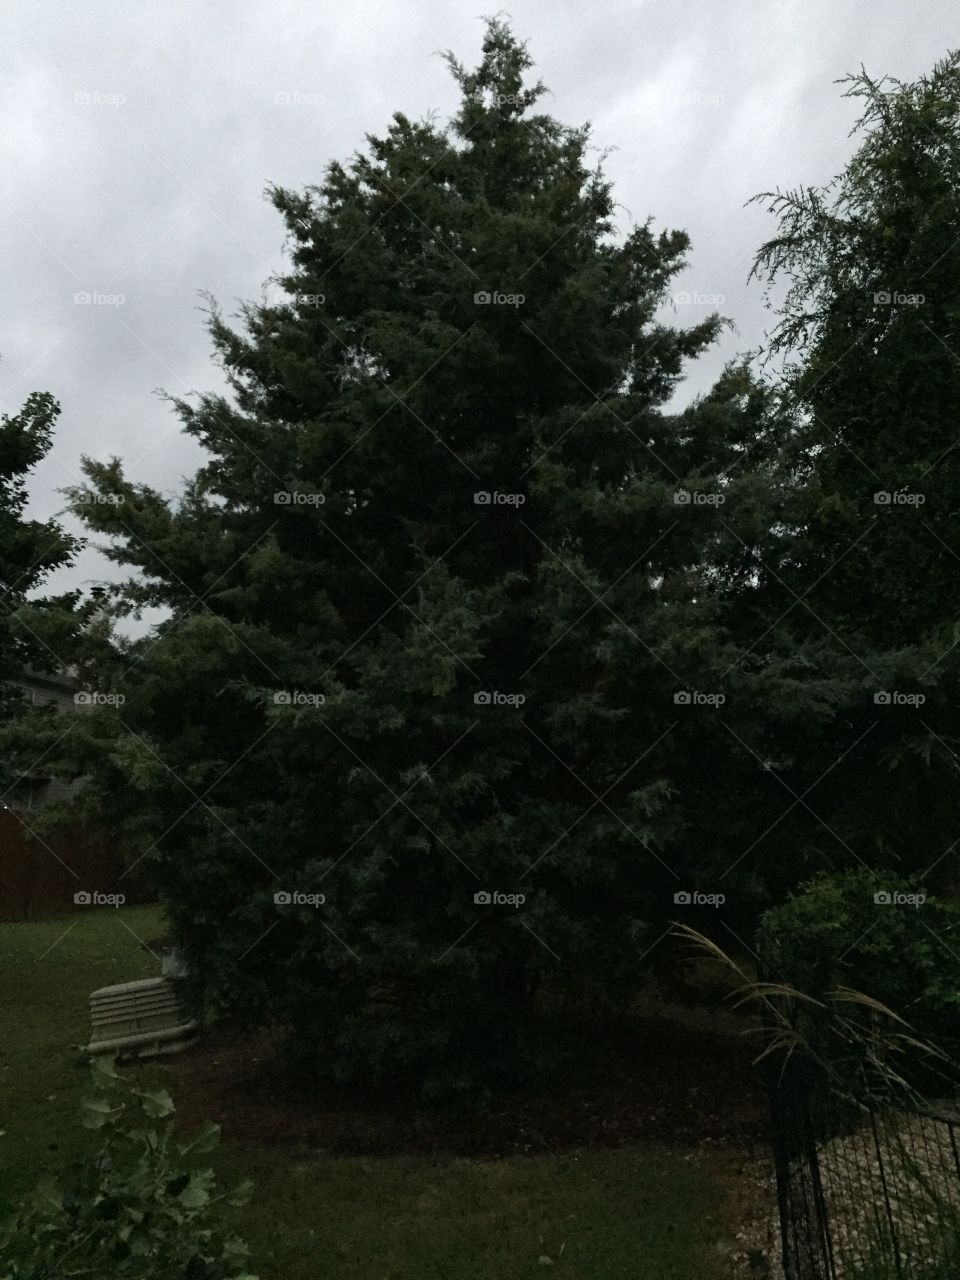 Beautiful Pine Tree in my backyard 